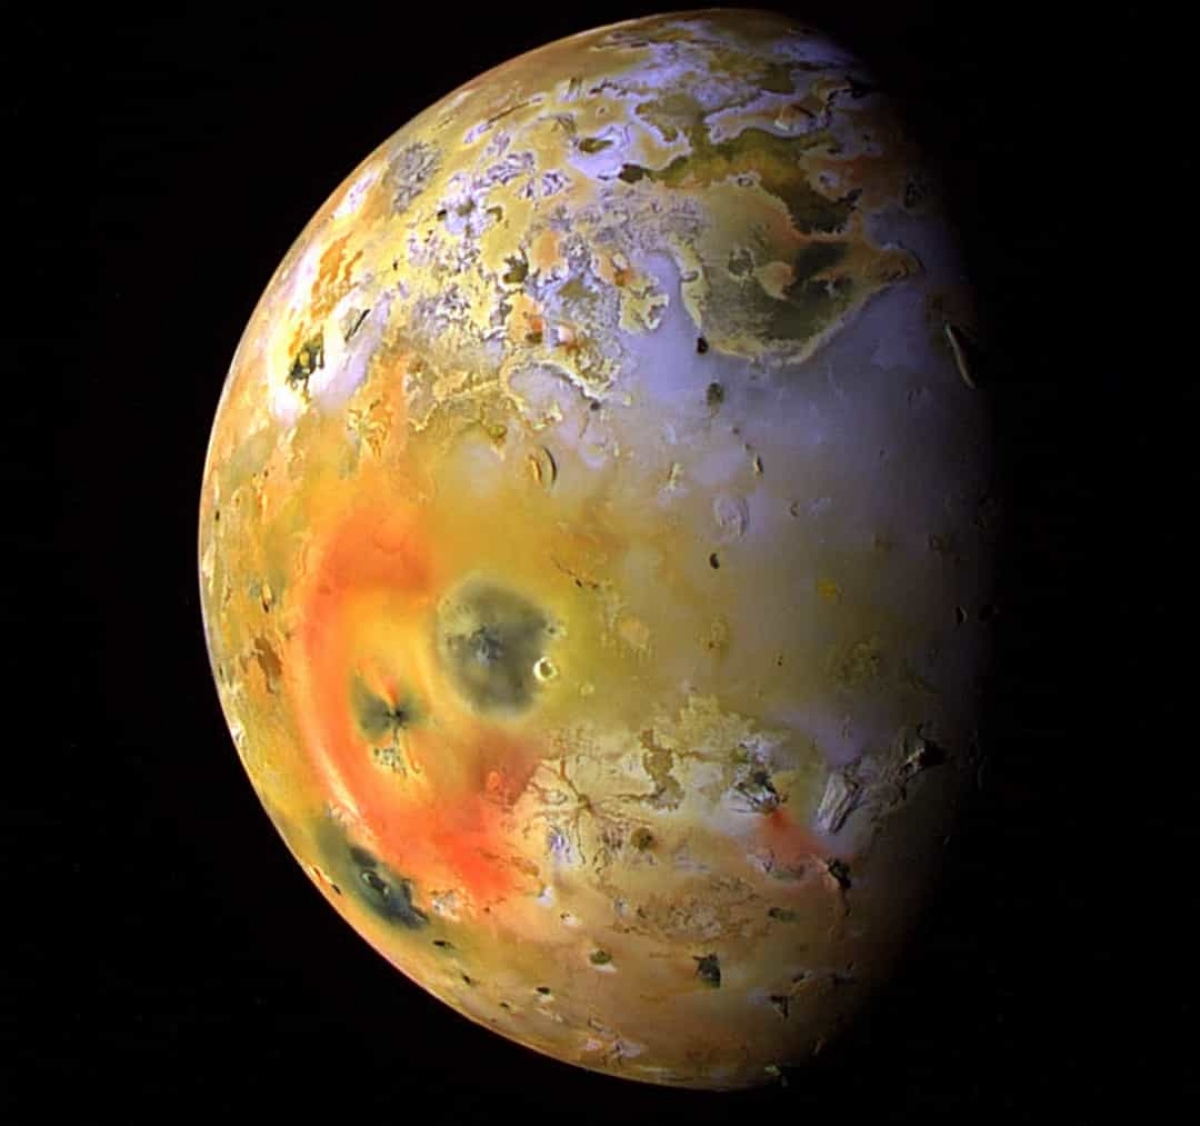 Với hơn 400 núi lửa đang hoạt động, Io – mặt trăng của Sao Mộc, là vật thể có hoạt động địa chất tích cực nhất trong hệ mặt trời.